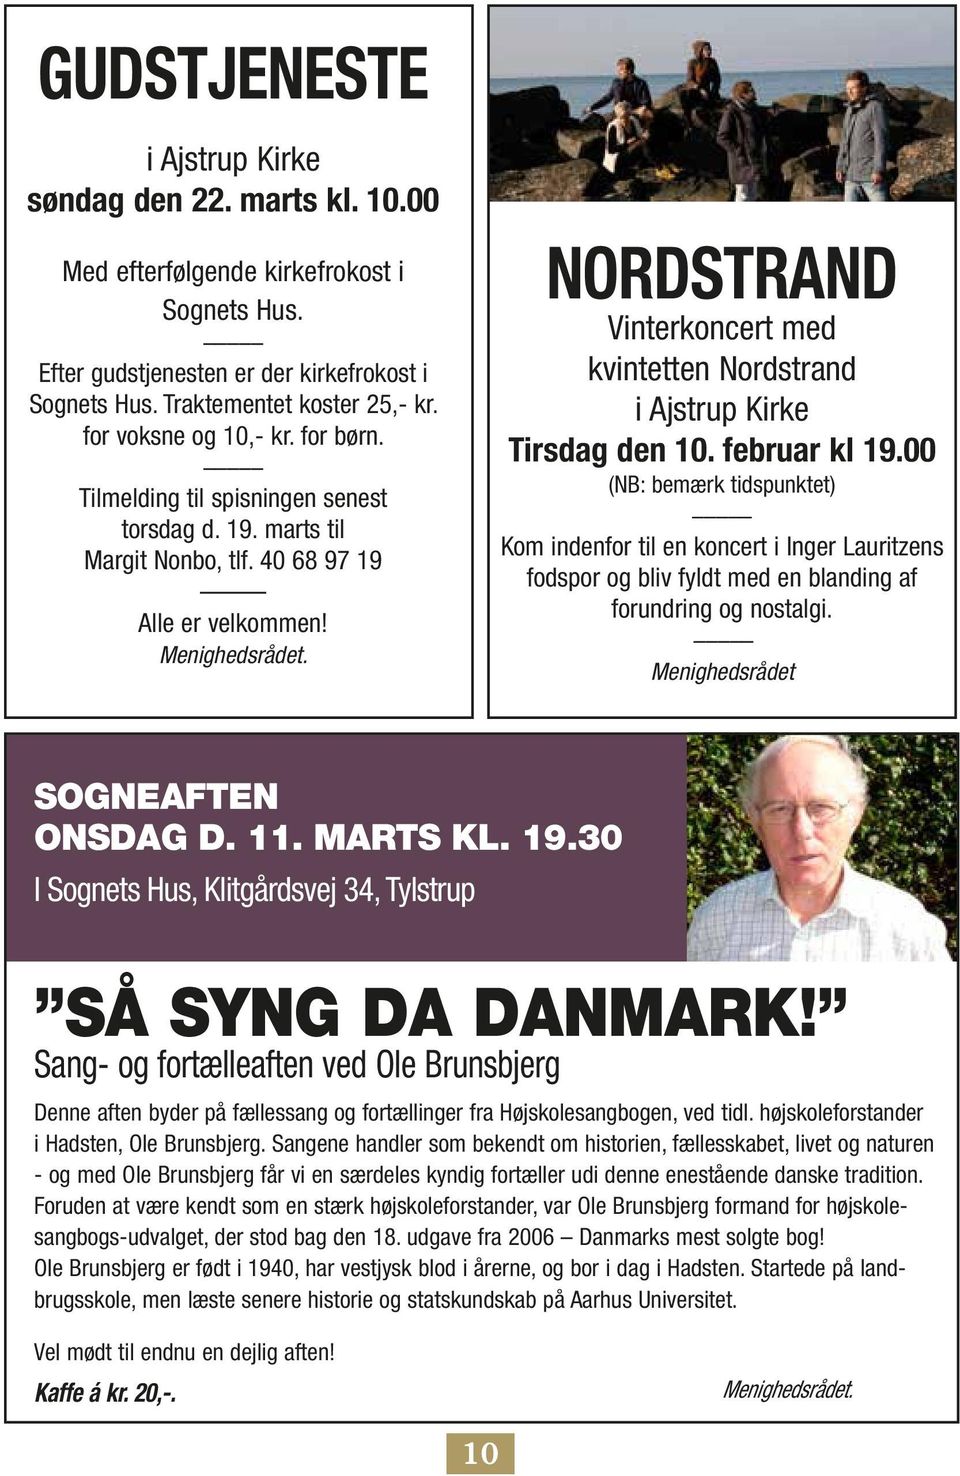 Nordstrand Vinterkoncert med kvintetten Nordstrand i Ajstrup Kirke Tirsdag den 10. februar kl 19.